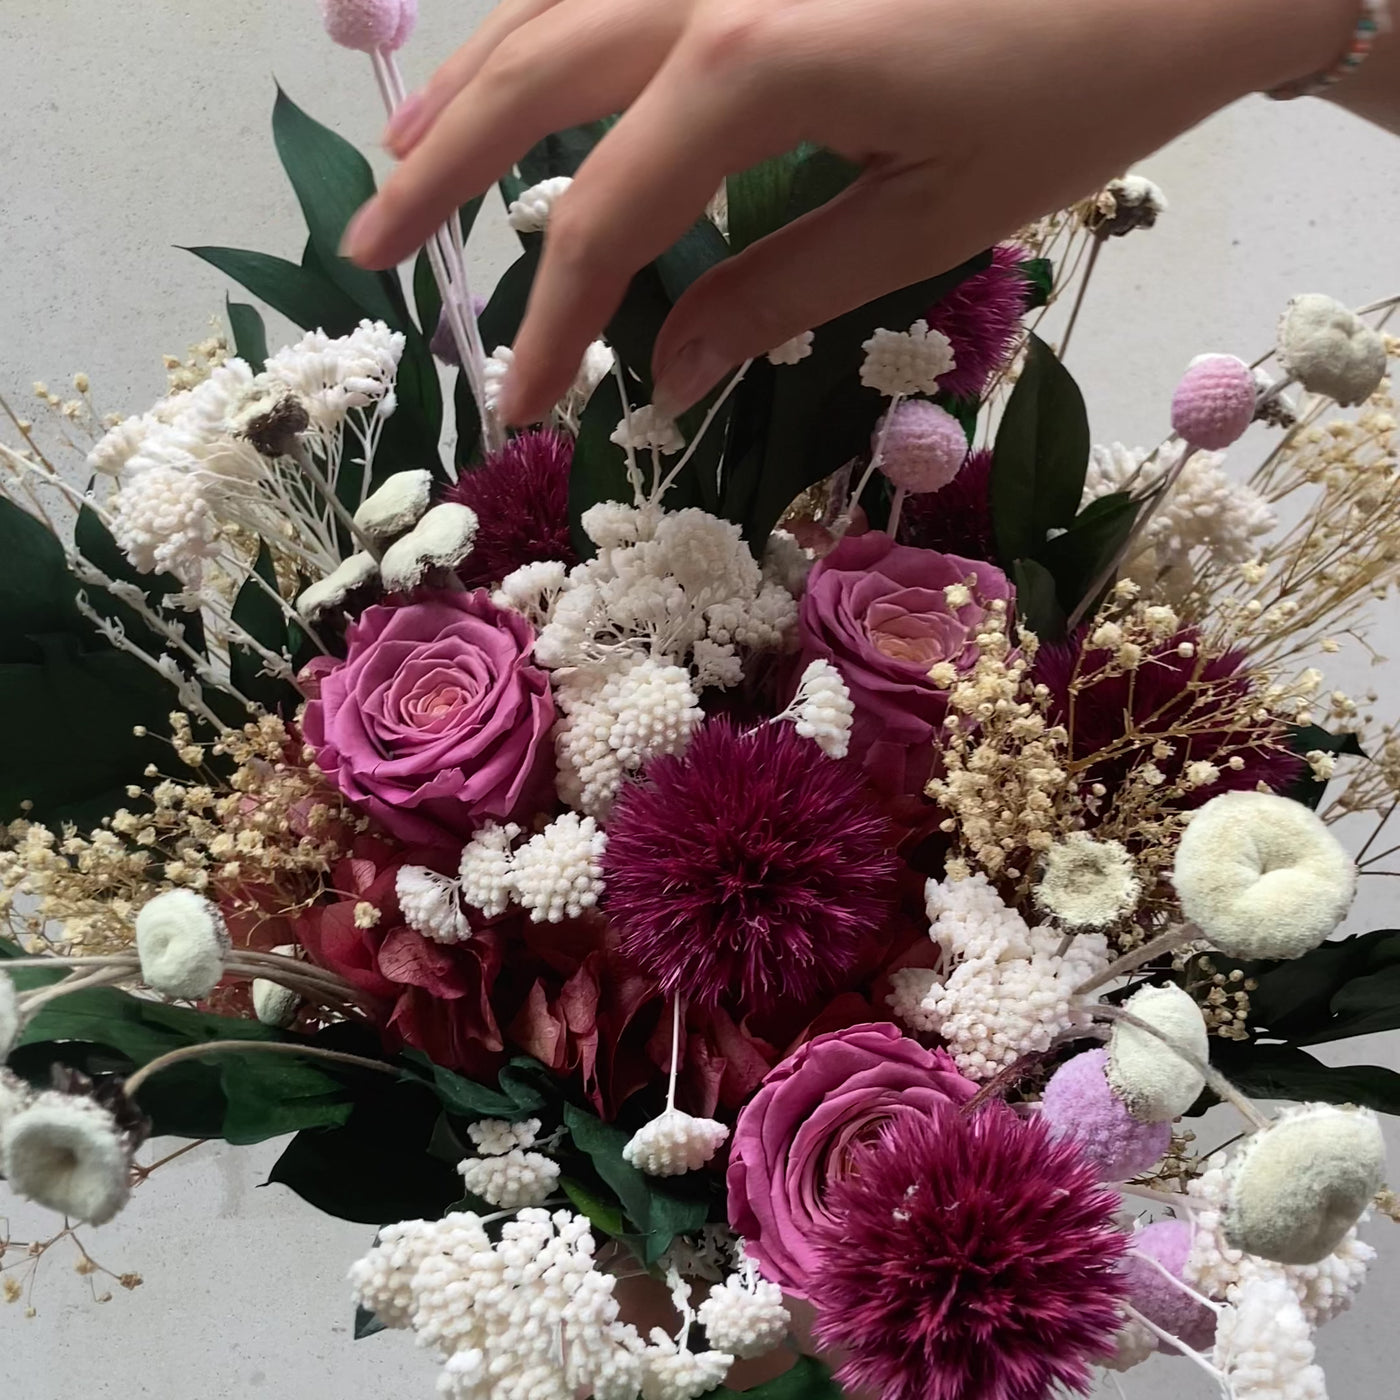 Bouquet de fleurs stabilisées éternelles rose et blanc composé de Rose, Chardon, Achillée, Craspédia, Ruscus, Gypsophile, Pali Pala, Hortensia. En mouvement